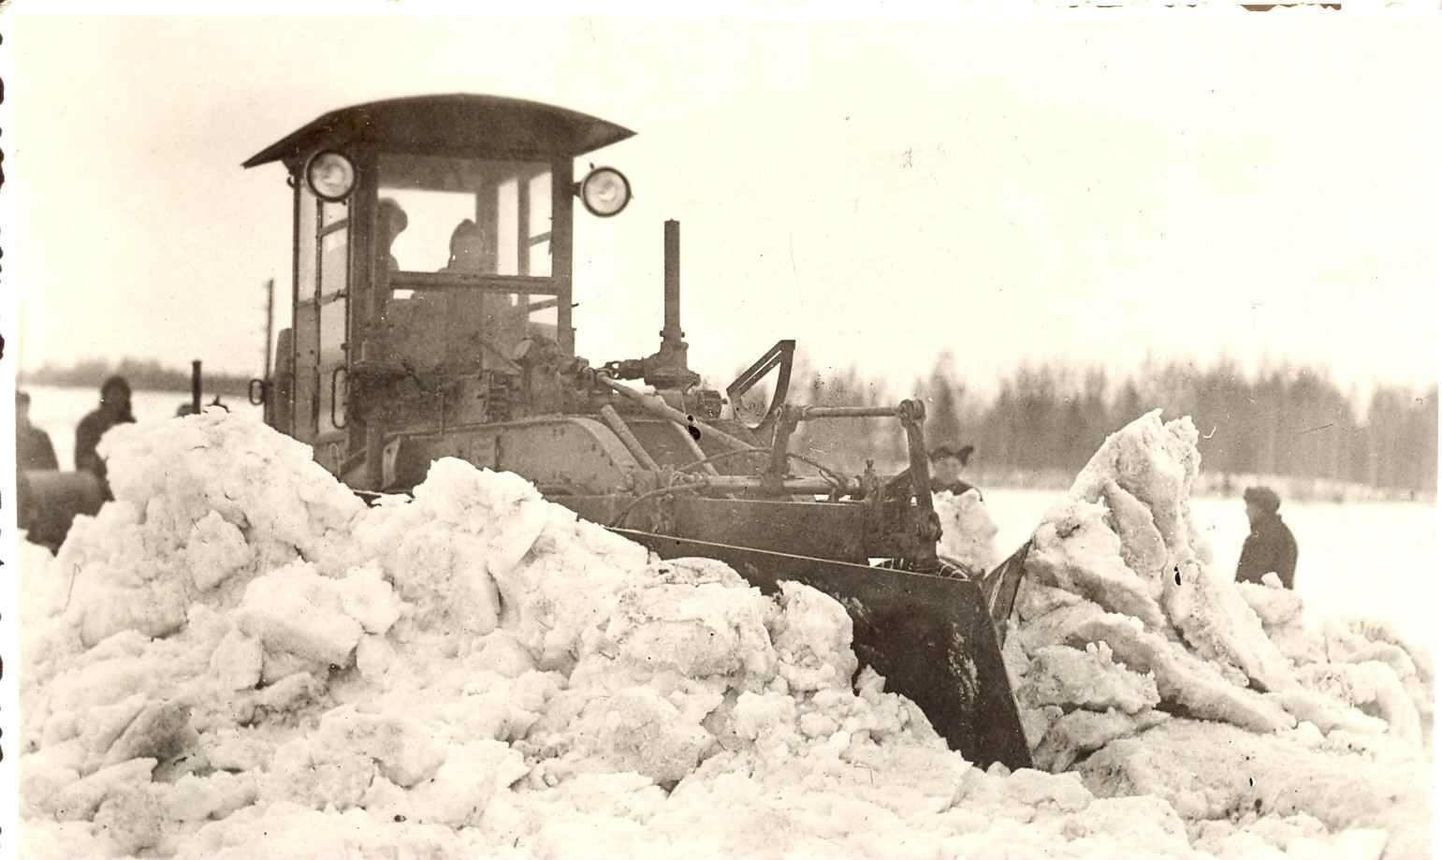 Caterpillari teehöövli ette monteeritud lumesahk lükkab teed lahti 1938. aasta alguses Holstre kandis.